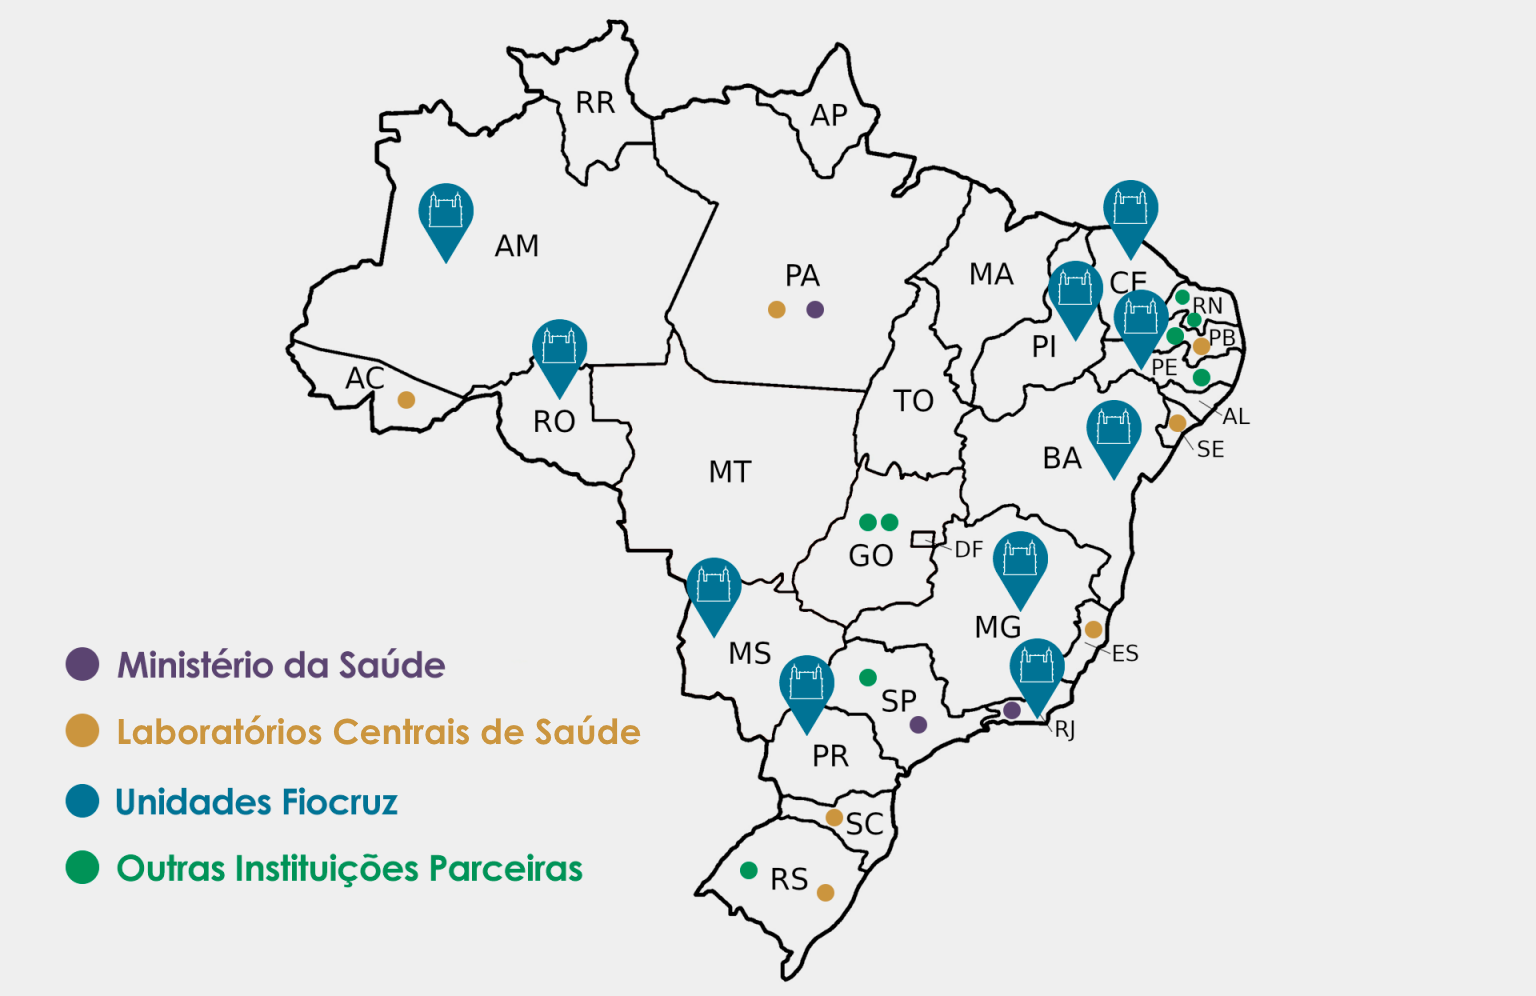 Gráfico em fundo branco representando o Mapa do Brasil, com indicação de localização das Unidades da Fiocruz e as Instituições Parceiras que compõem a Rede de Vigilância Genômica da Fiocruz. O mapa consiste apenas nos contornos dos estados em preto, com o preenchimento na cor do fundo. Os estados brasileiros estão identificados por suas siglas, e marcados com um código de cores. Em azul, temos alfinetes de localização com o símbolo da Fiocruz (contorno em branco de um castelo com duas torres), indicando as Unidades: Fiocruz Amazônia, no estado do Amazonas; Fiocruz Rondônia, Fiocruz Mato Grosso do Sul, Fiocruz Paraná, Fiocruz Piauí, Fiocruz Ceará, Fiocruz Pernambuco, Fiocruz Bahia, Fiocruz Minas Gerais e Fiocruz Rio de Janeiro. As instituições vinculadas ao Ministério da Saúde estão representadas na cor roxa, na forma de pequenos círculos. Estes marcam os estados do Pará, Rio de Janeiro e São Paulo. Círculos amarelos, do mesmo tamanho dos roxos, marcam os Laboratórios Centrais de Saúde, nos estados do Acre, Pará, Paraíba, Sergipe, Espírito Santo, Santa Catarina e Rio Grande do Sul. Por fim, círculos verdes indicam outras instituições parceiras, nos estados do Rio Grande do Norte, Paraíba, Pernambuco, Goiás, São Paulo e Rio Grande do Sul. Os estados do Rio Grande do Norte e Goiás possuem duas instituições desta categoria cada. No canto inferior esquerdo do gráfico, temos a legenda, com as quatro categorias dispostas por escrito nas cores utilizadas para indicá-las no mapa.